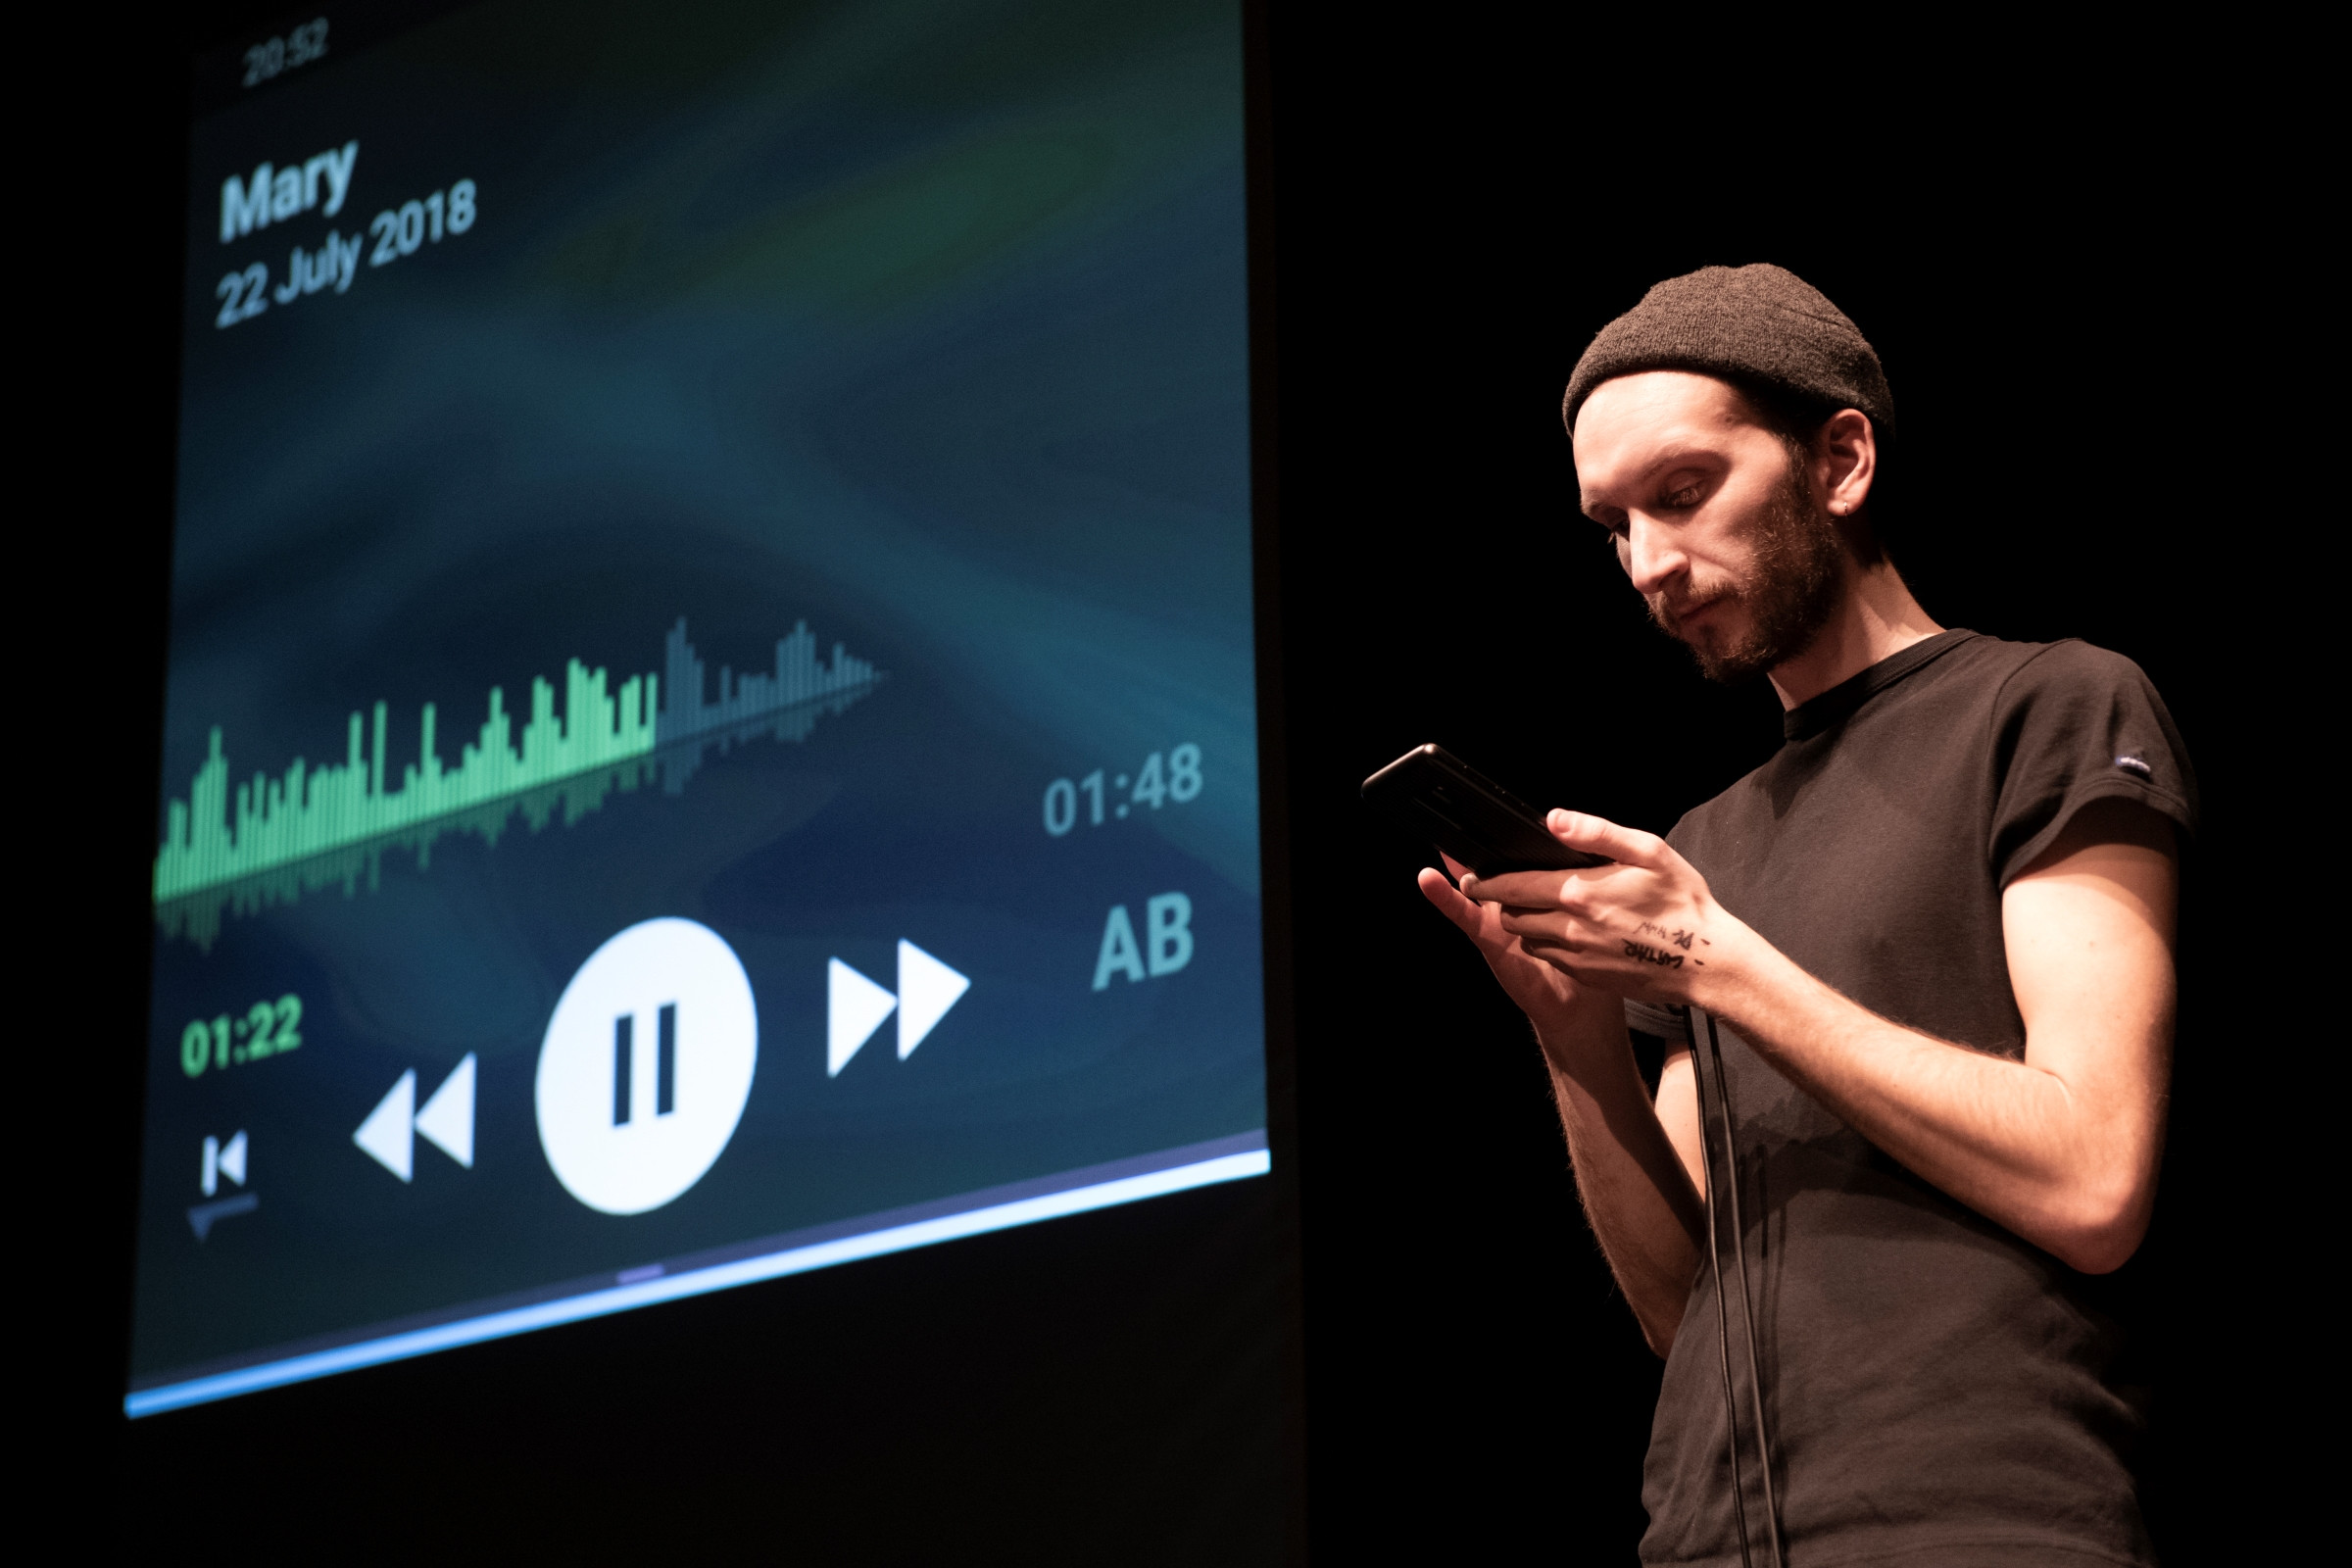 Hannes Dereere mit Blick auf das Smartphone in seiner Handy. Der Screen neben ihm zeigt das Abspielen einer Tonaufnahme.